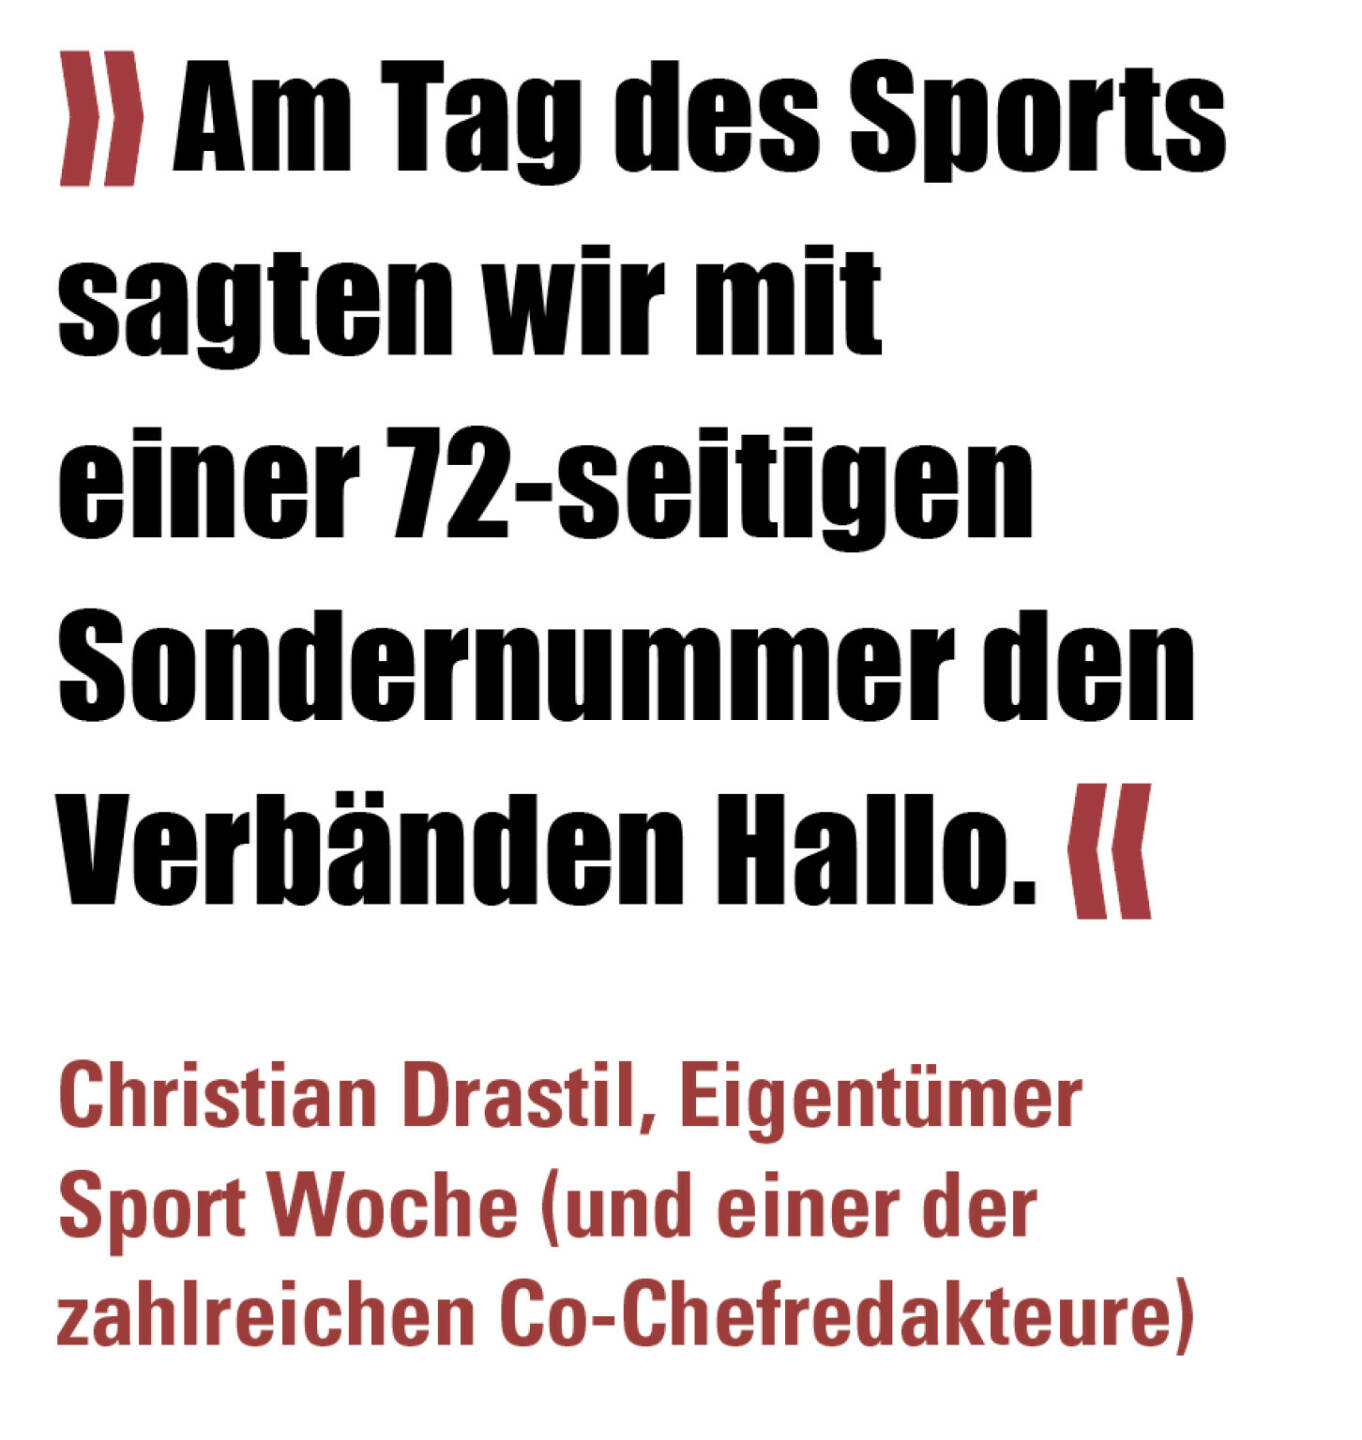 » Am Tag des Sports sagten wir mit einer 72-seitigen Sondernummer den Verbänden Hallo. «
Christian Drastil, Eigentümer Sport Woche (und einer der zahlreichen Co-Chefredakteure) 